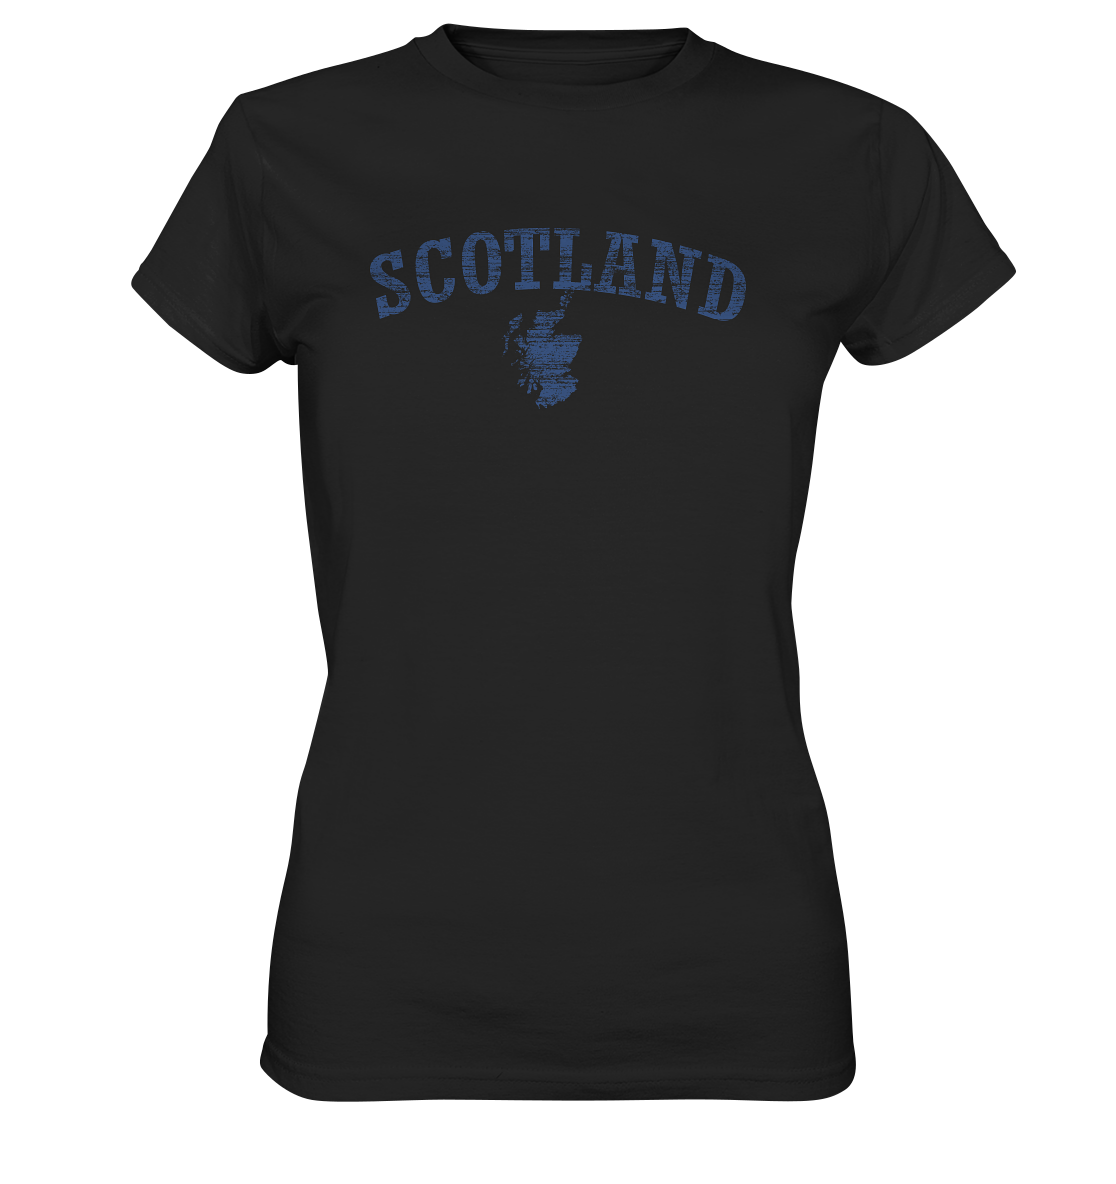 Scotland "Landscape" - Ladies Premium Shirt